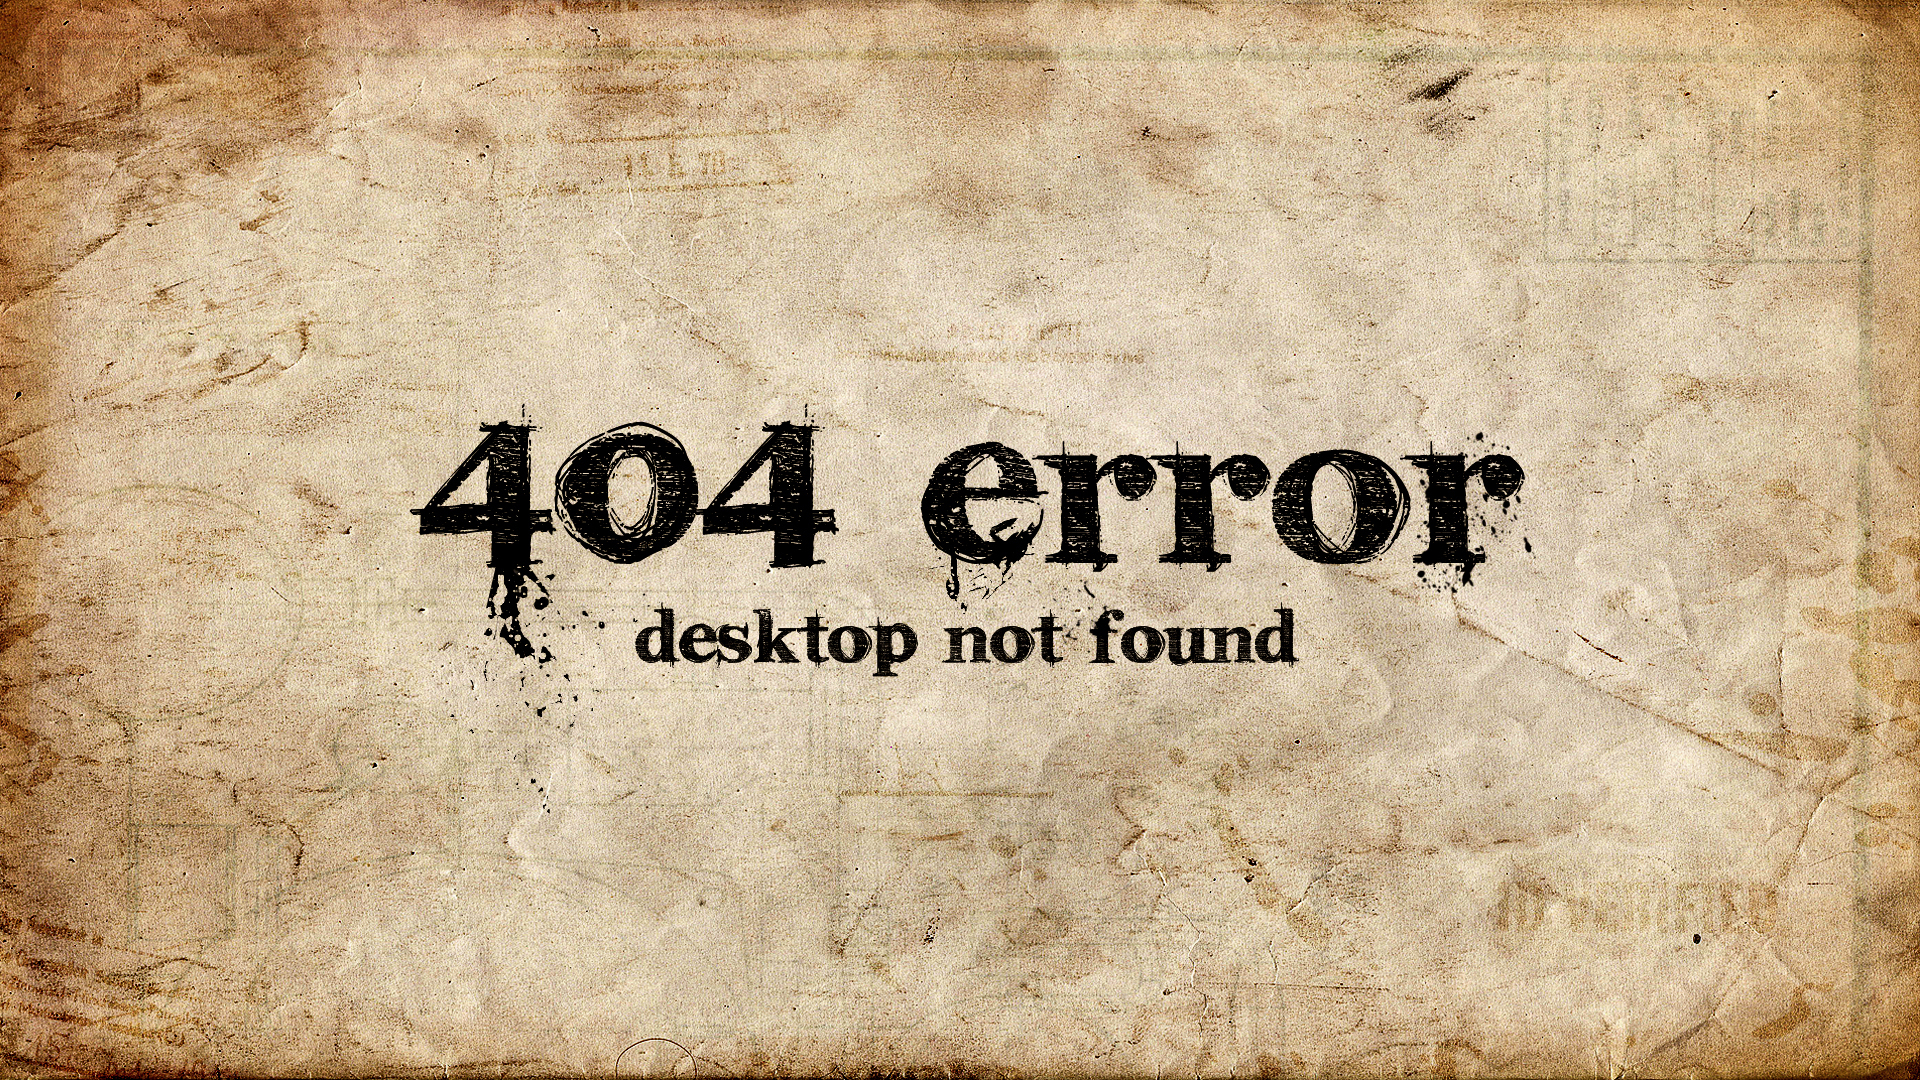 Meilleurs fonds d'écran 404 pour l'écran du téléphone